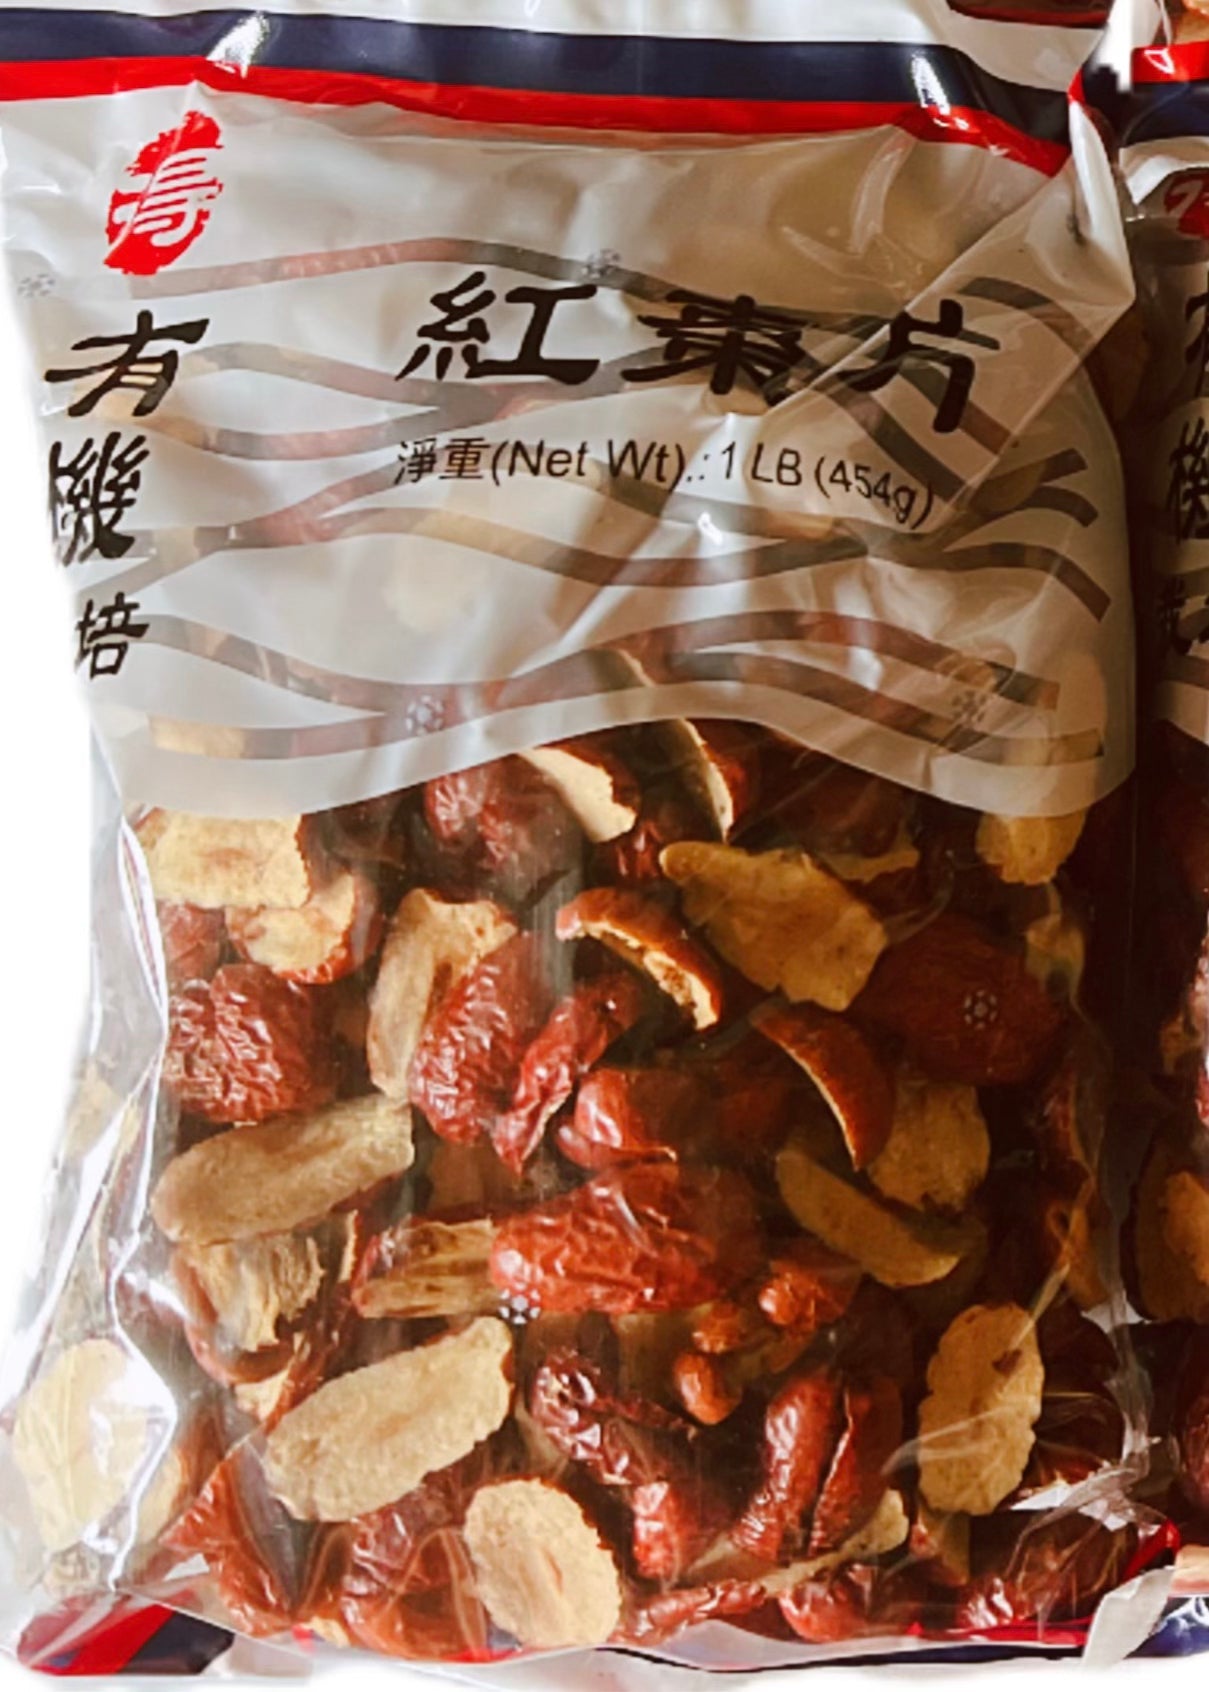 有机栽培红枣片 1磅/包